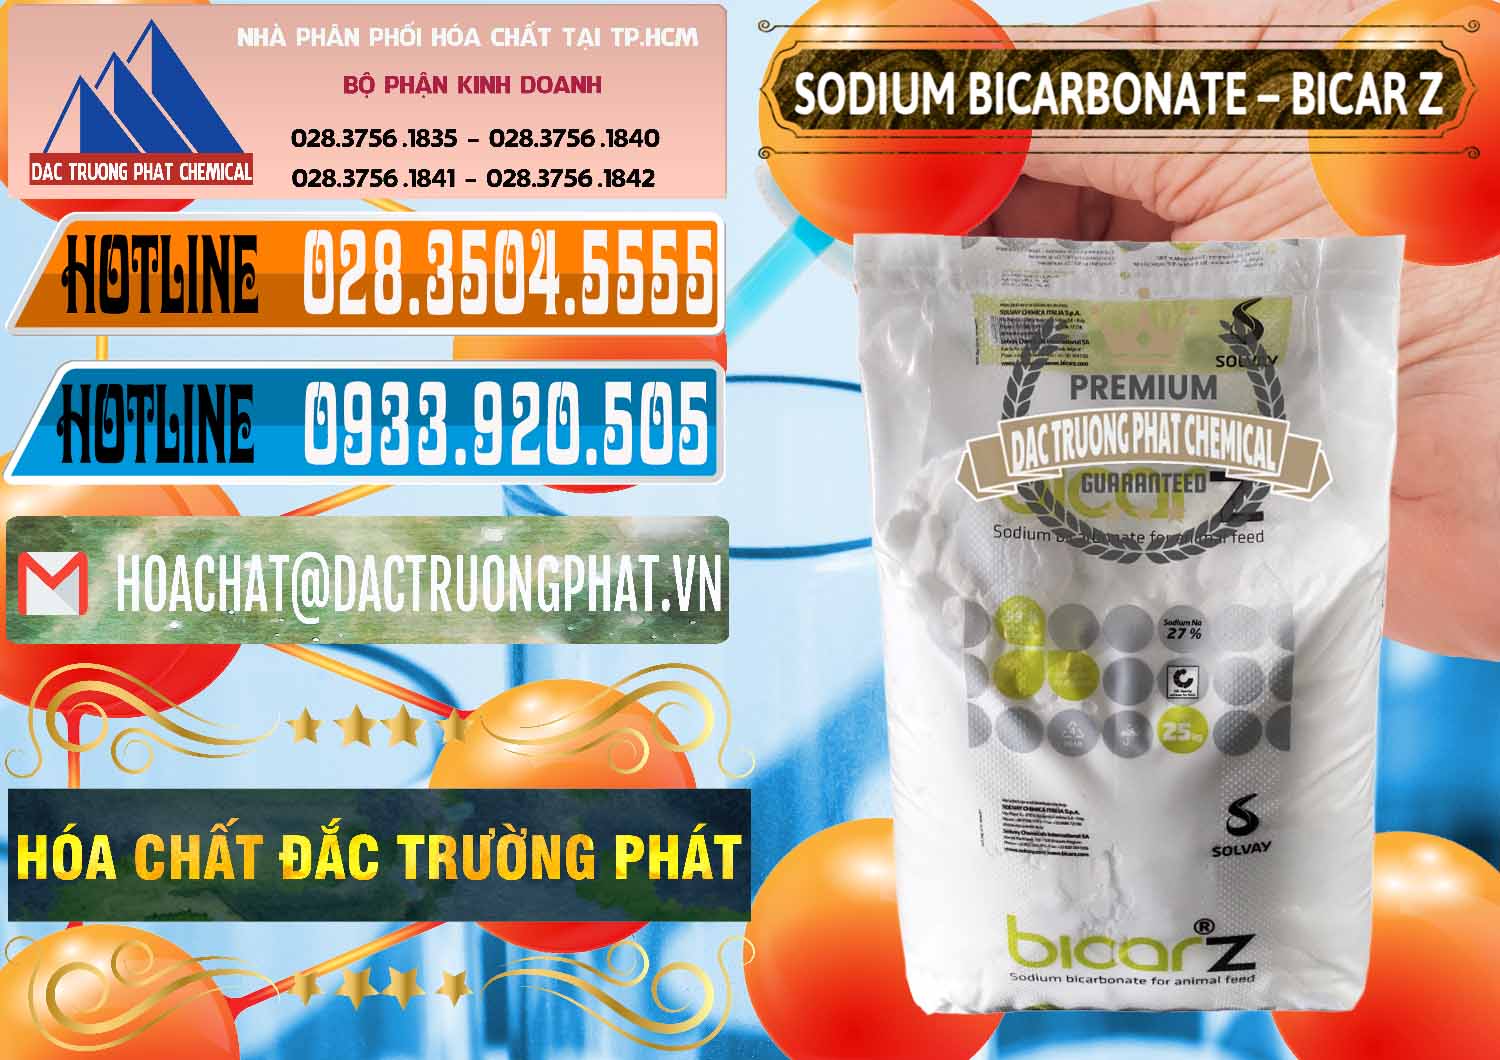 Cty chuyên bán _ cung ứng Sodium Bicarbonate – NaHCO3 Bicar Z Ý Italy Solvay - 0139 - Nơi chuyên kinh doanh & phân phối hóa chất tại TP.HCM - stmp.net